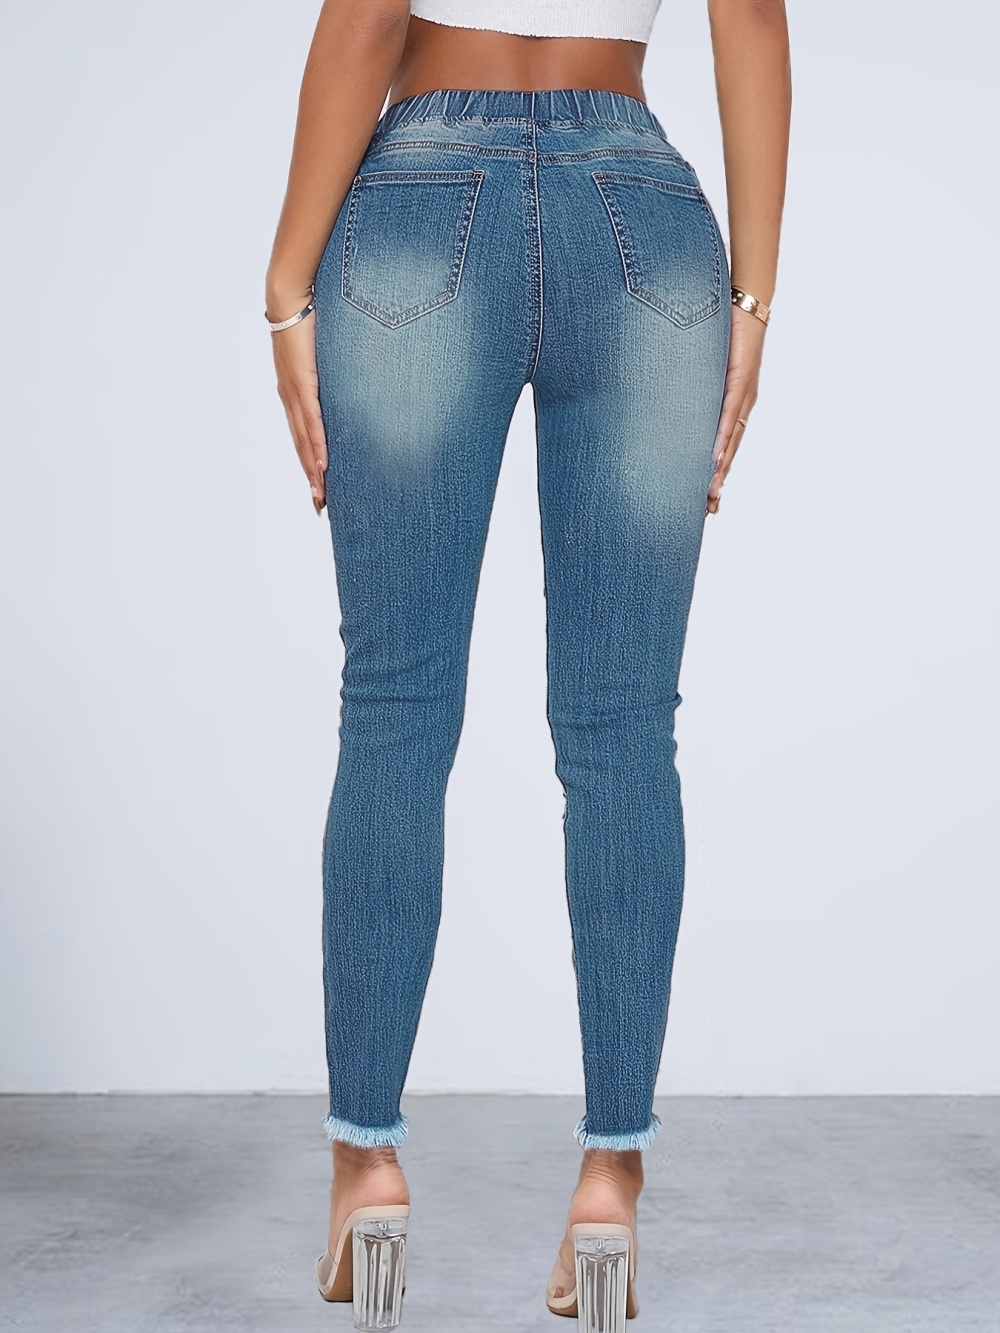 European style jeans denim pencil pants for women